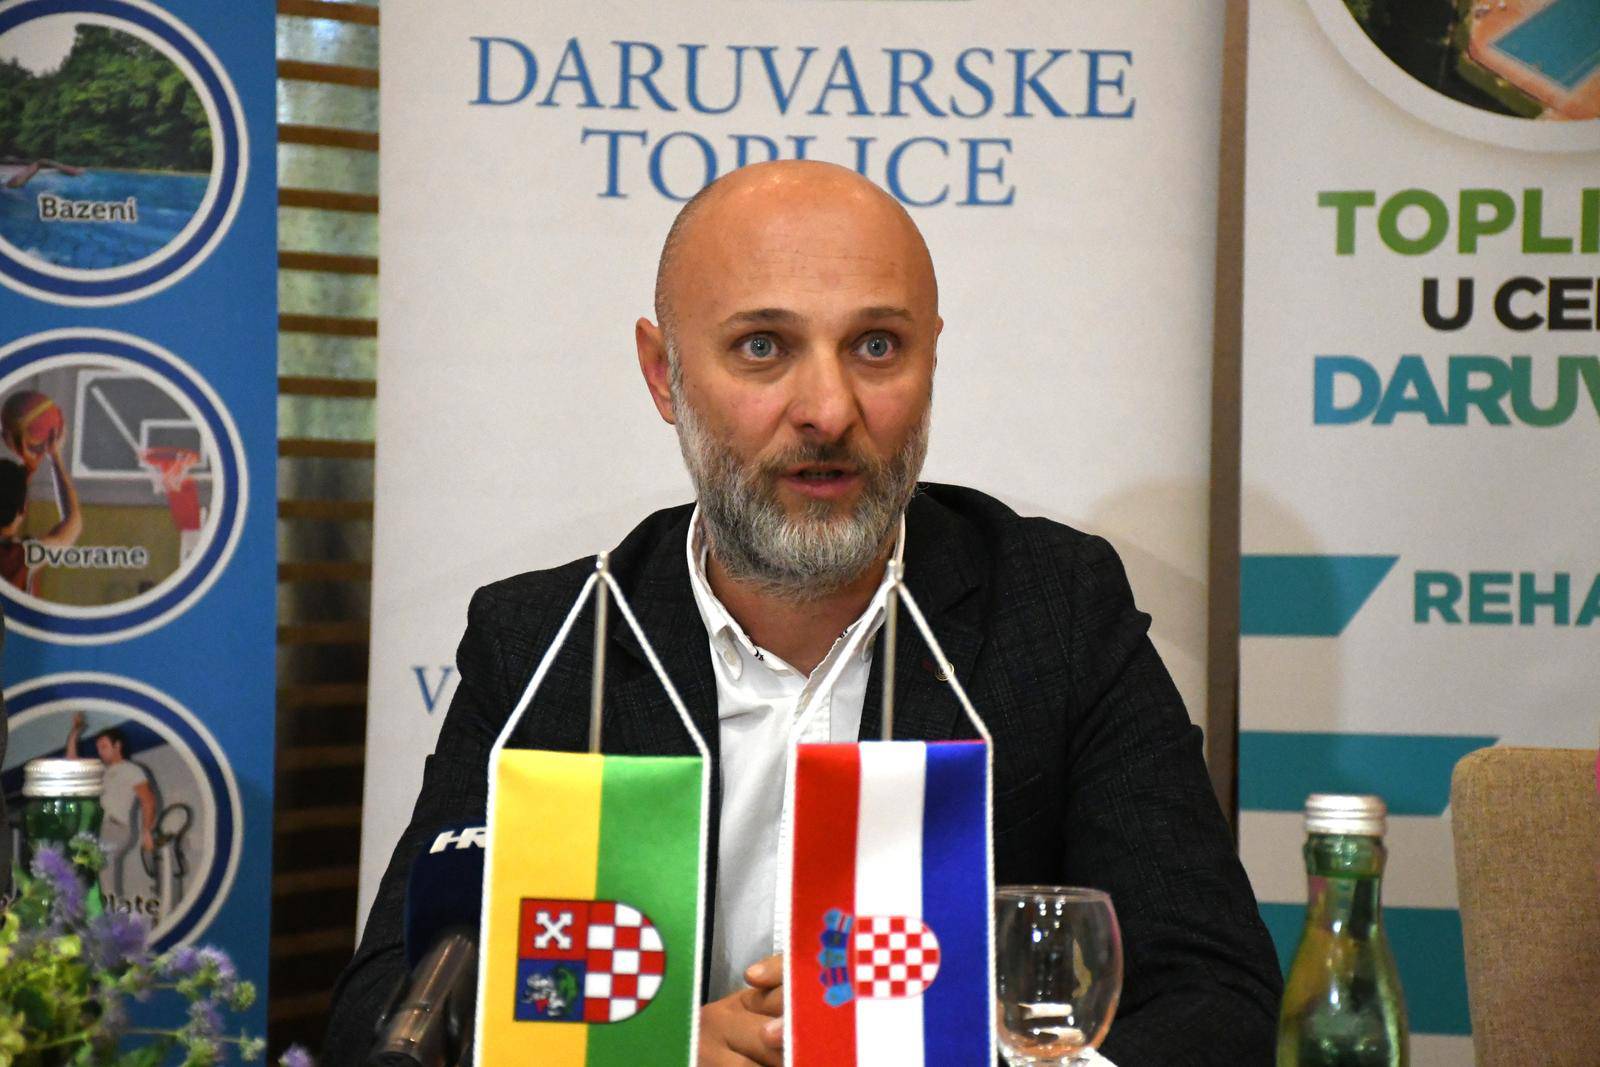 Daruvar: Potpisan ugovor o suradnji između Sportskog saveza Grada Zagreba i Daruvarskih toplica